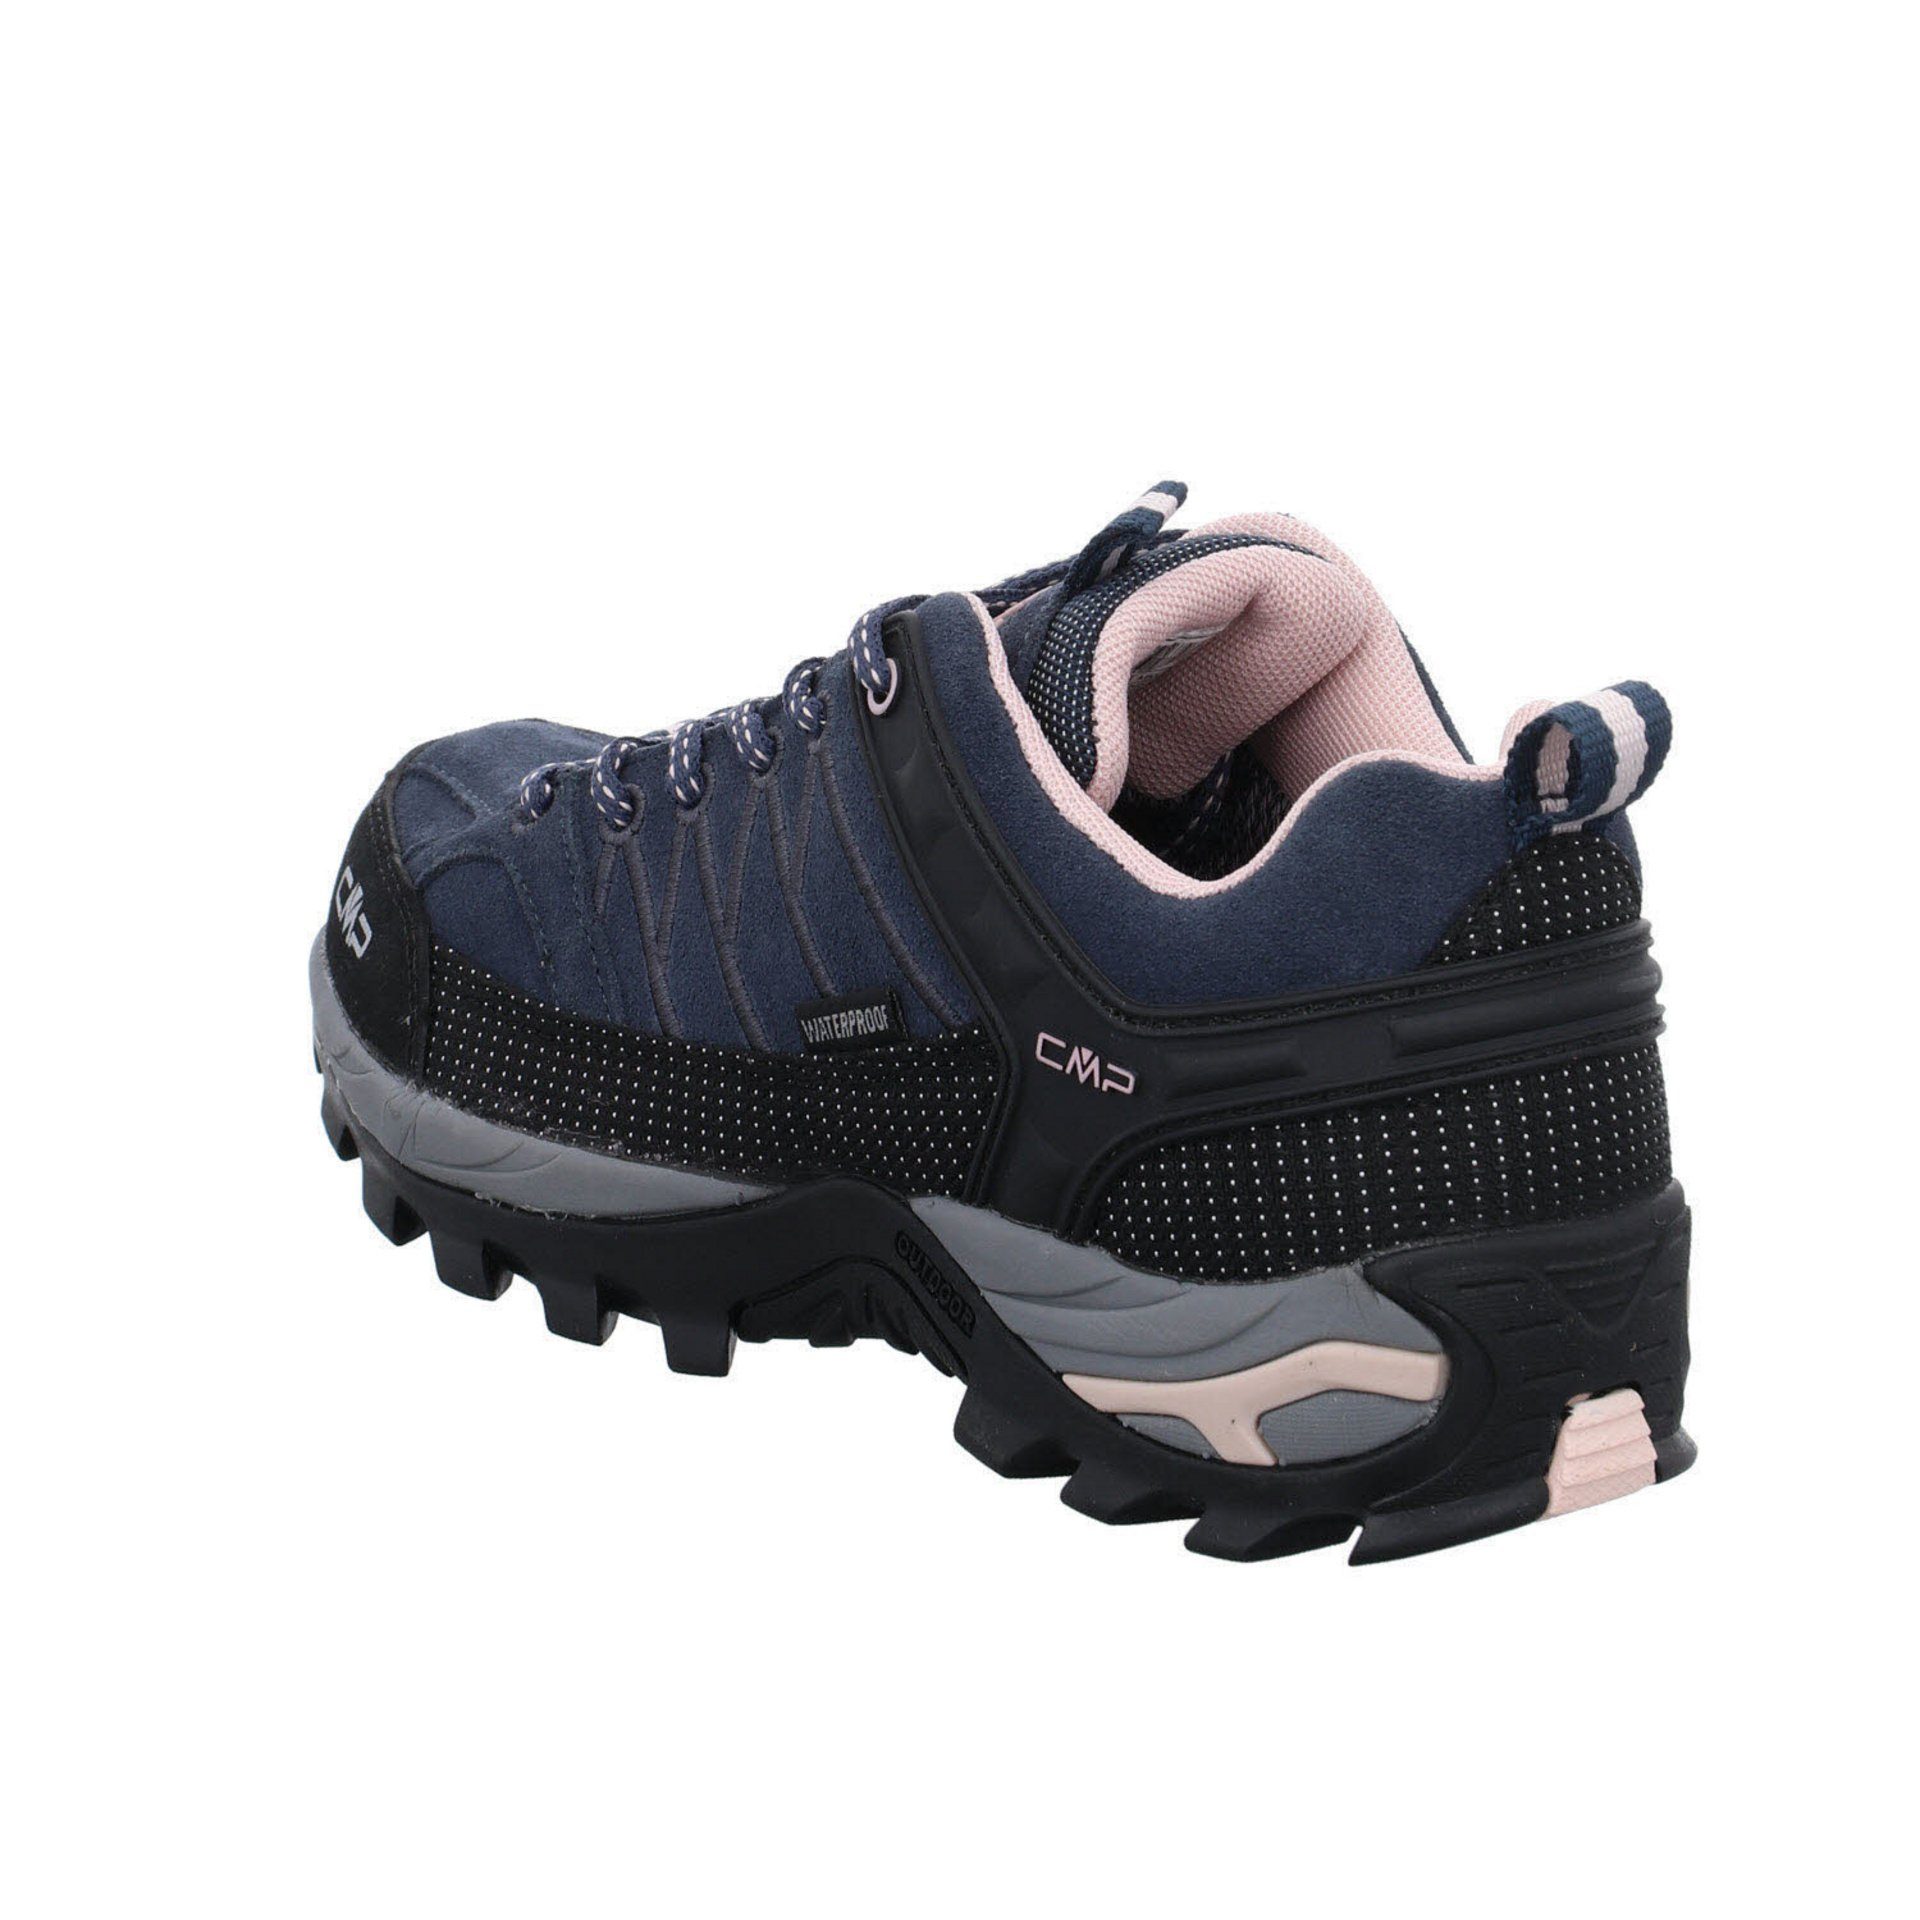 Outdoorschuh Outdoorschuh anthrazit Leder-/Textilkombination Schuhe CMP Riegel Outdoor Low Damen (201)